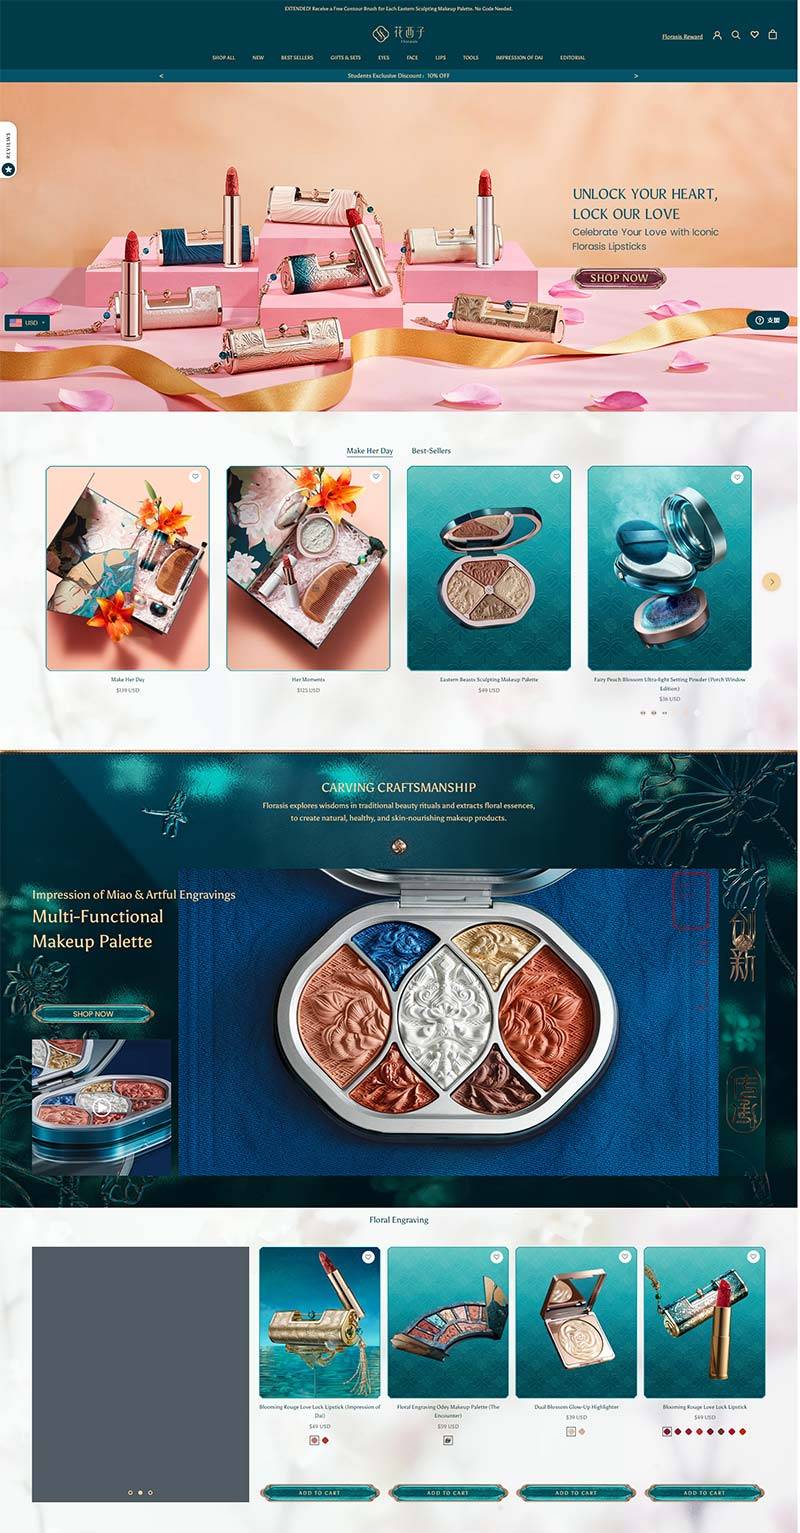 Florasis 花西子-中国创新彩妆品牌购物网站